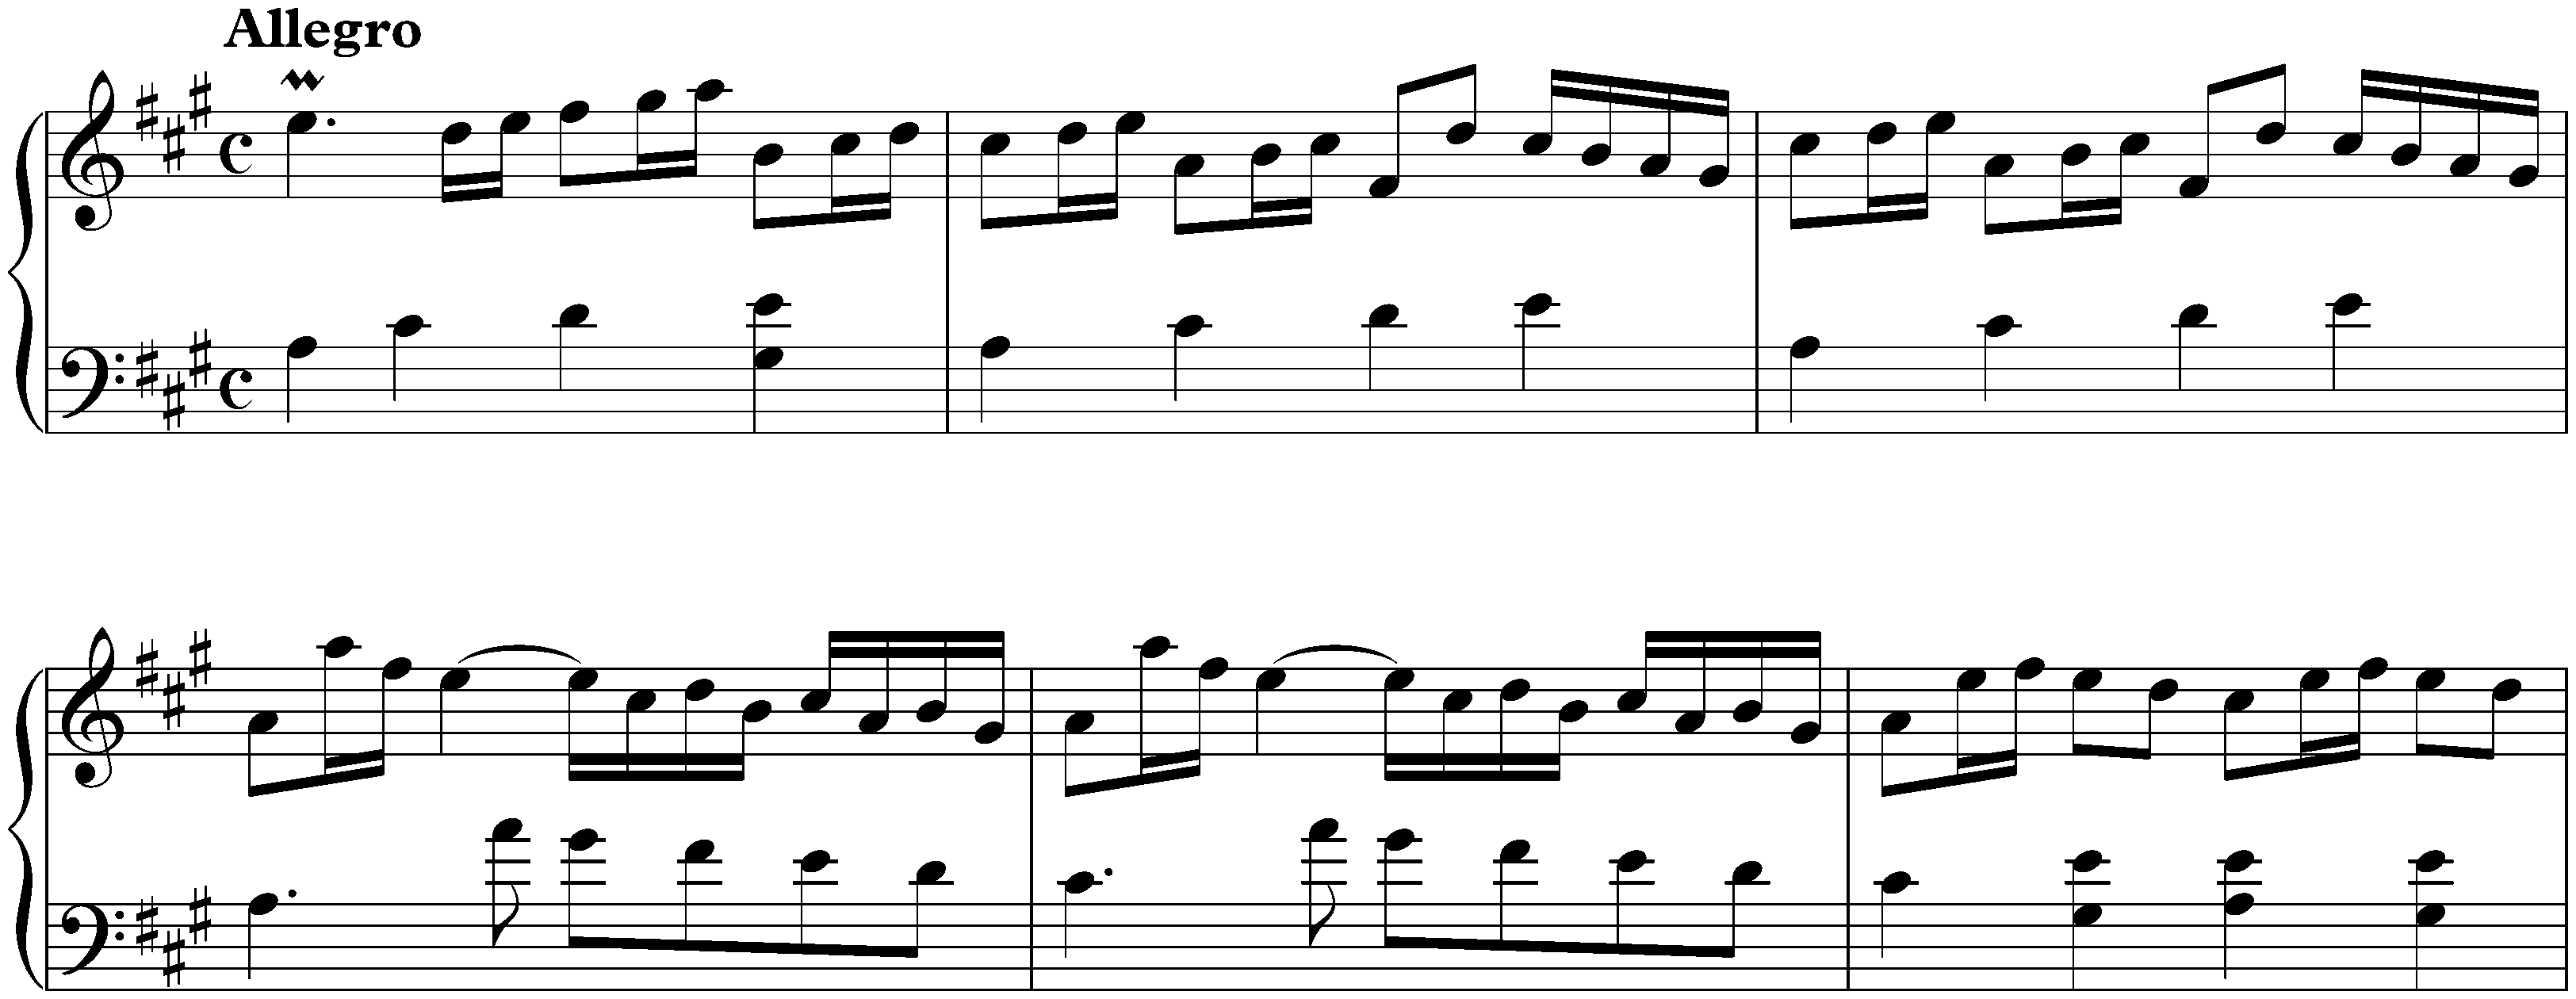 Sonata in A major, K. 301